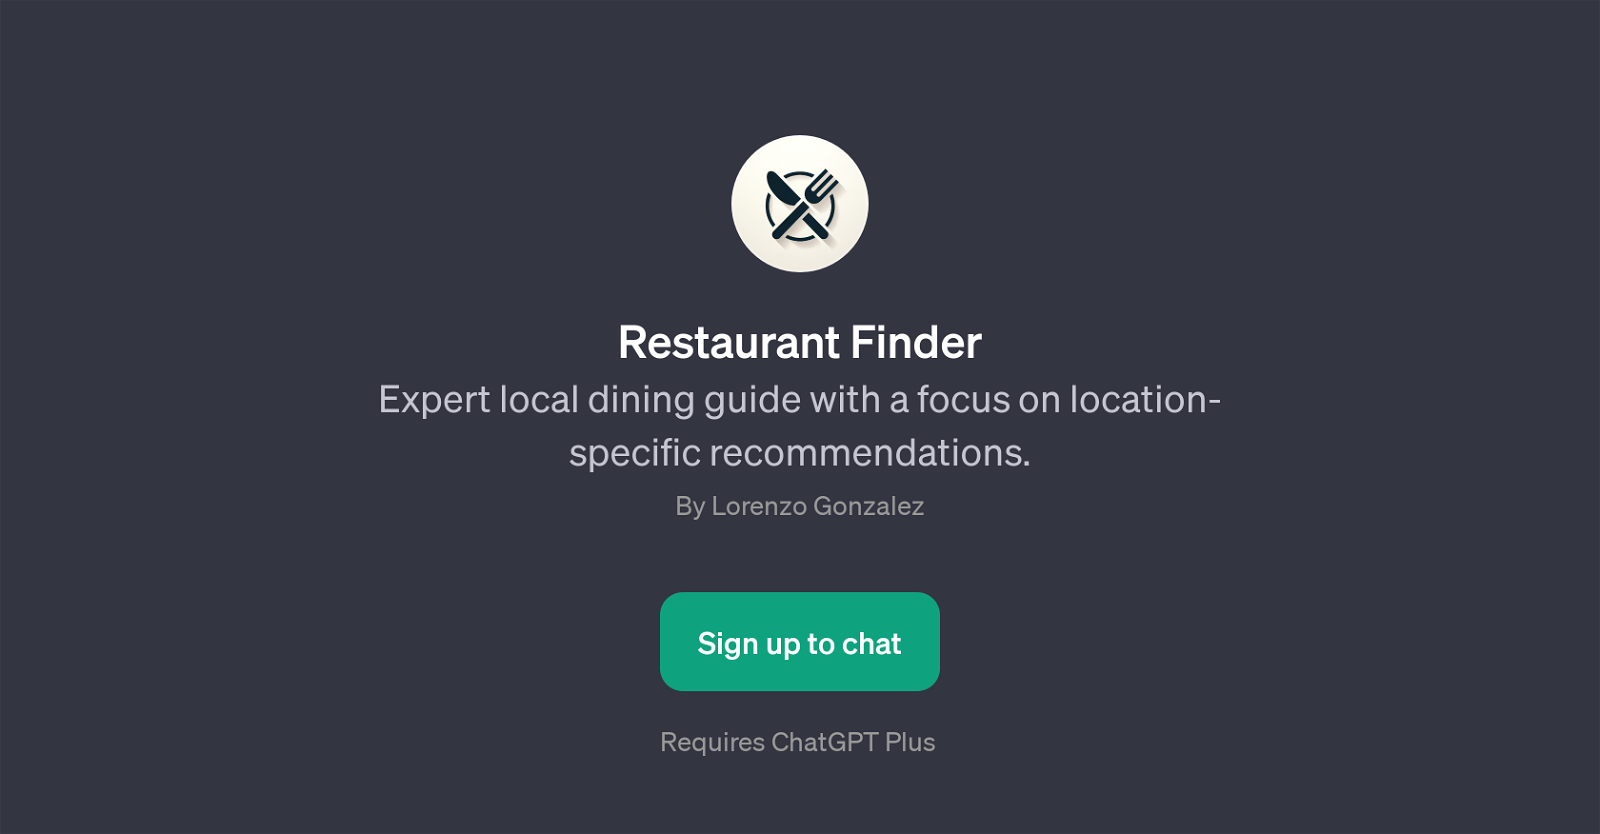 Restaurant Finder website